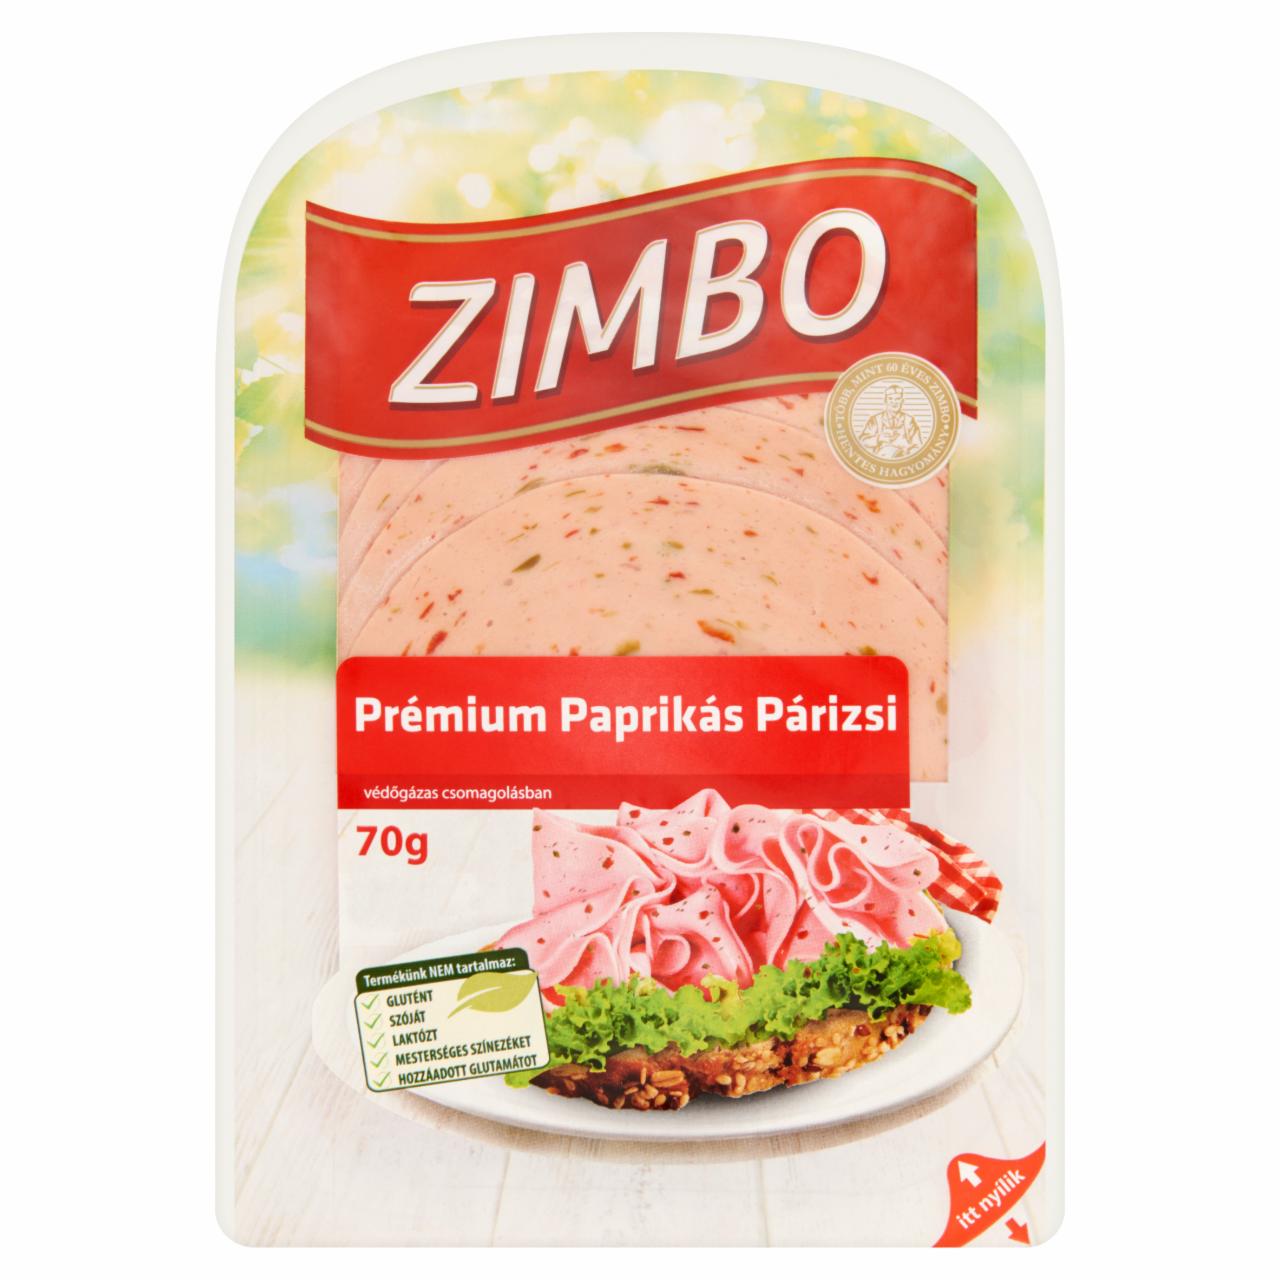 Képek - Zimbo Prémium paprikás párizsi 70 g